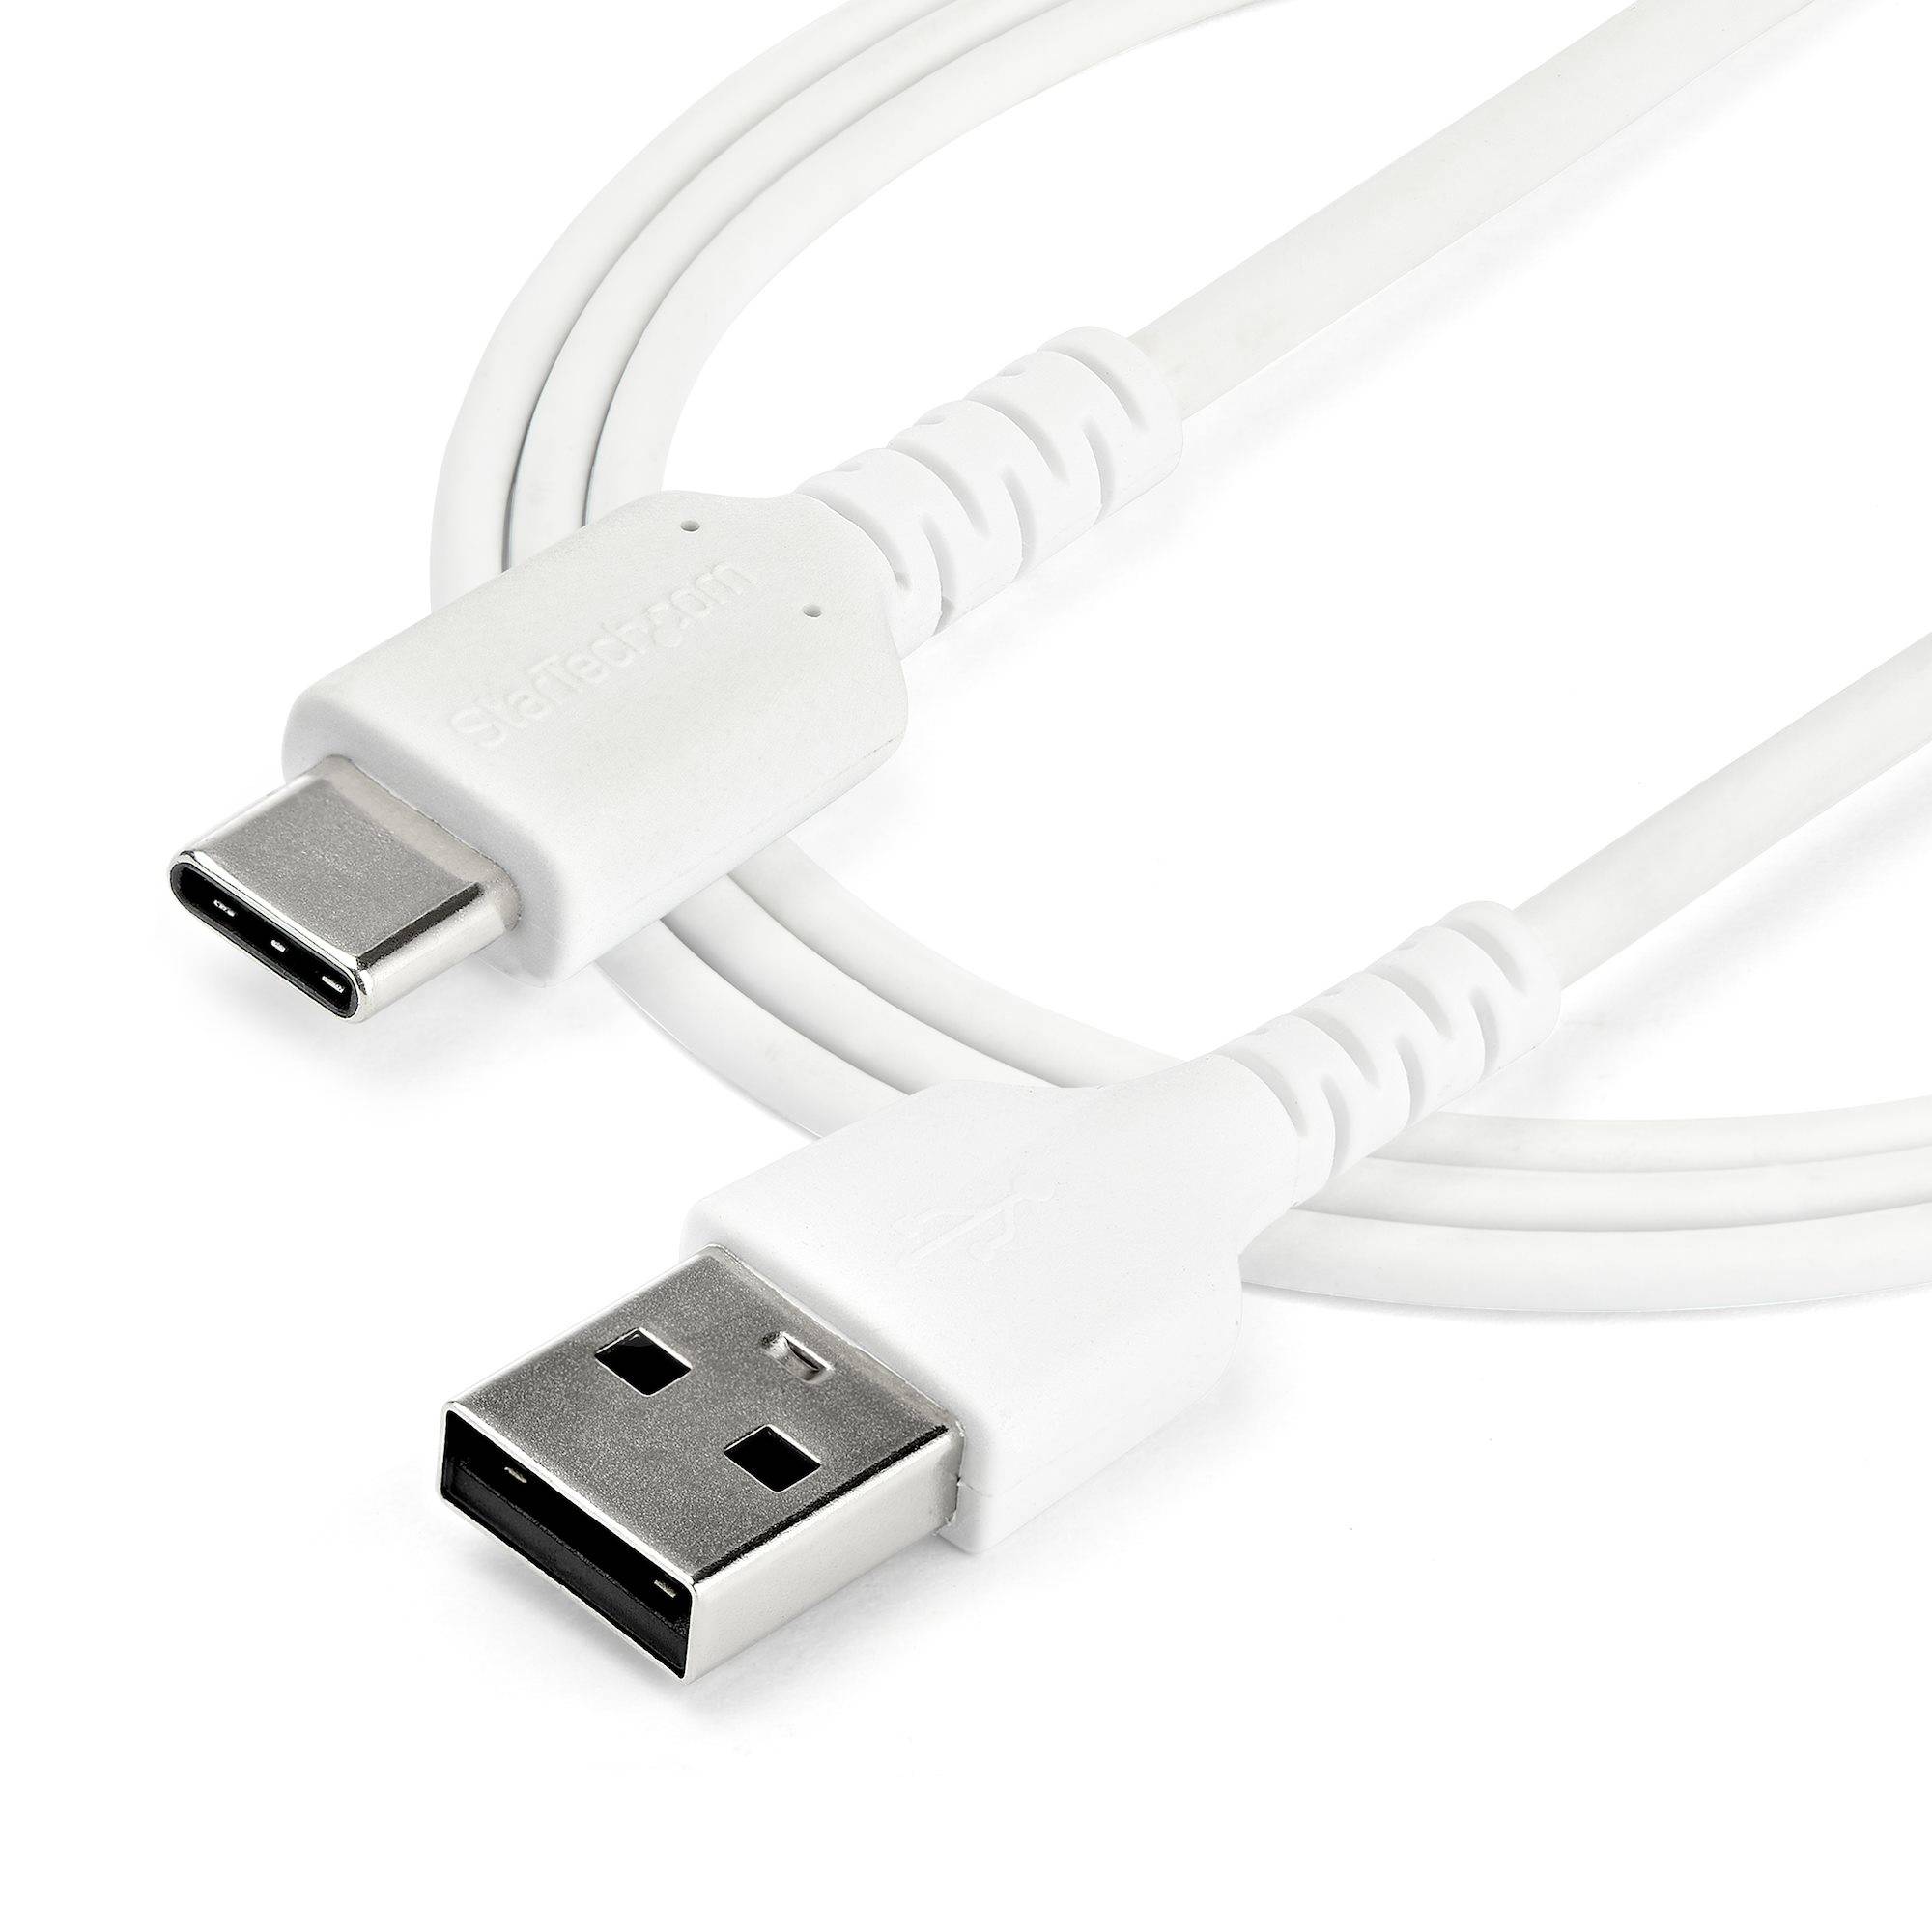 Rca Informatique - image du produit : 1M DURABLE USB 2.0 TO USB C CABLE WHITE ARAMID FIBER